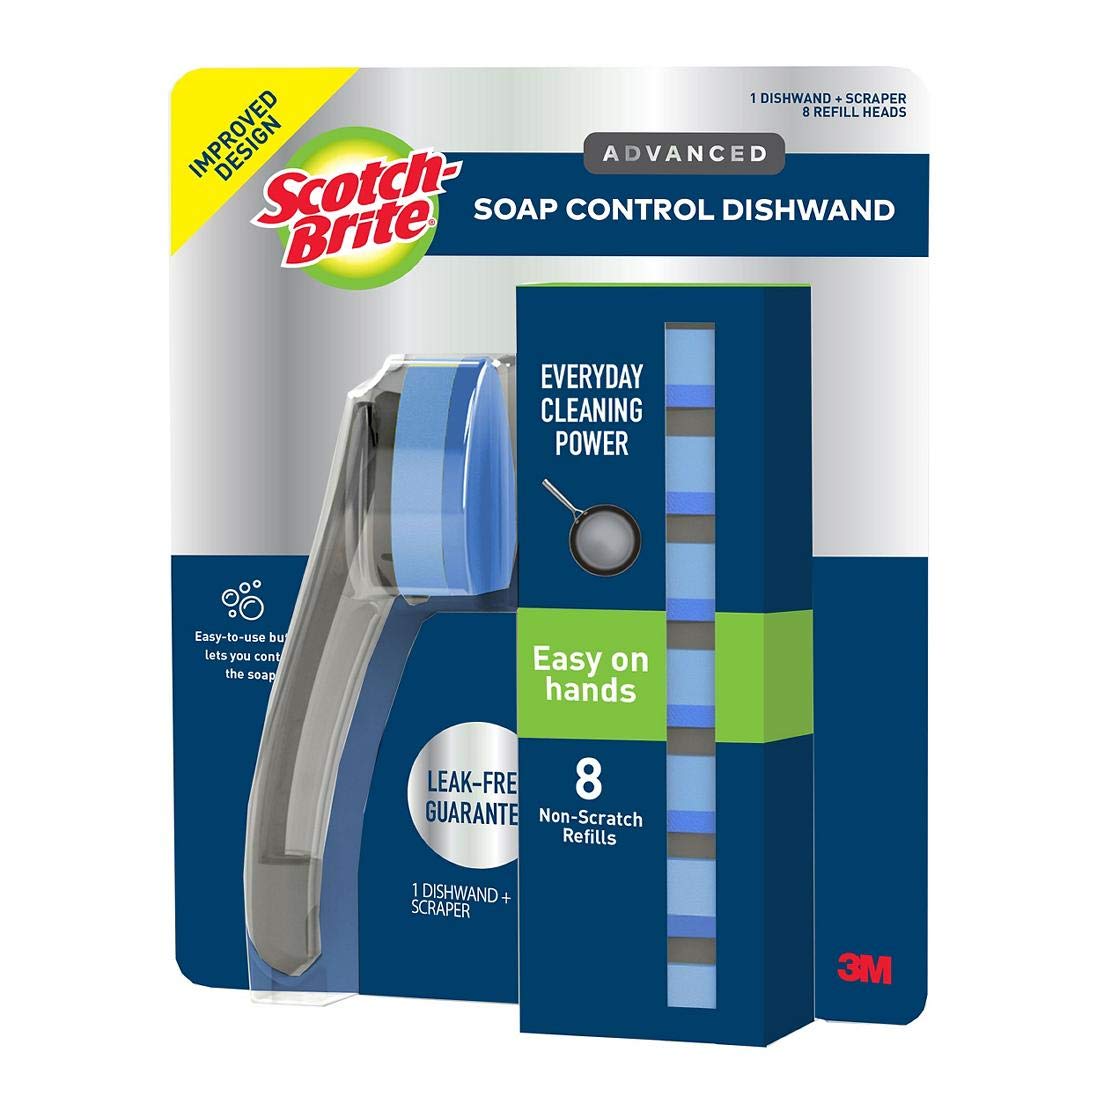 Scotch Brite Advanced Soap Control Dishwand And Scraper, 8 Non-Scratch Refills